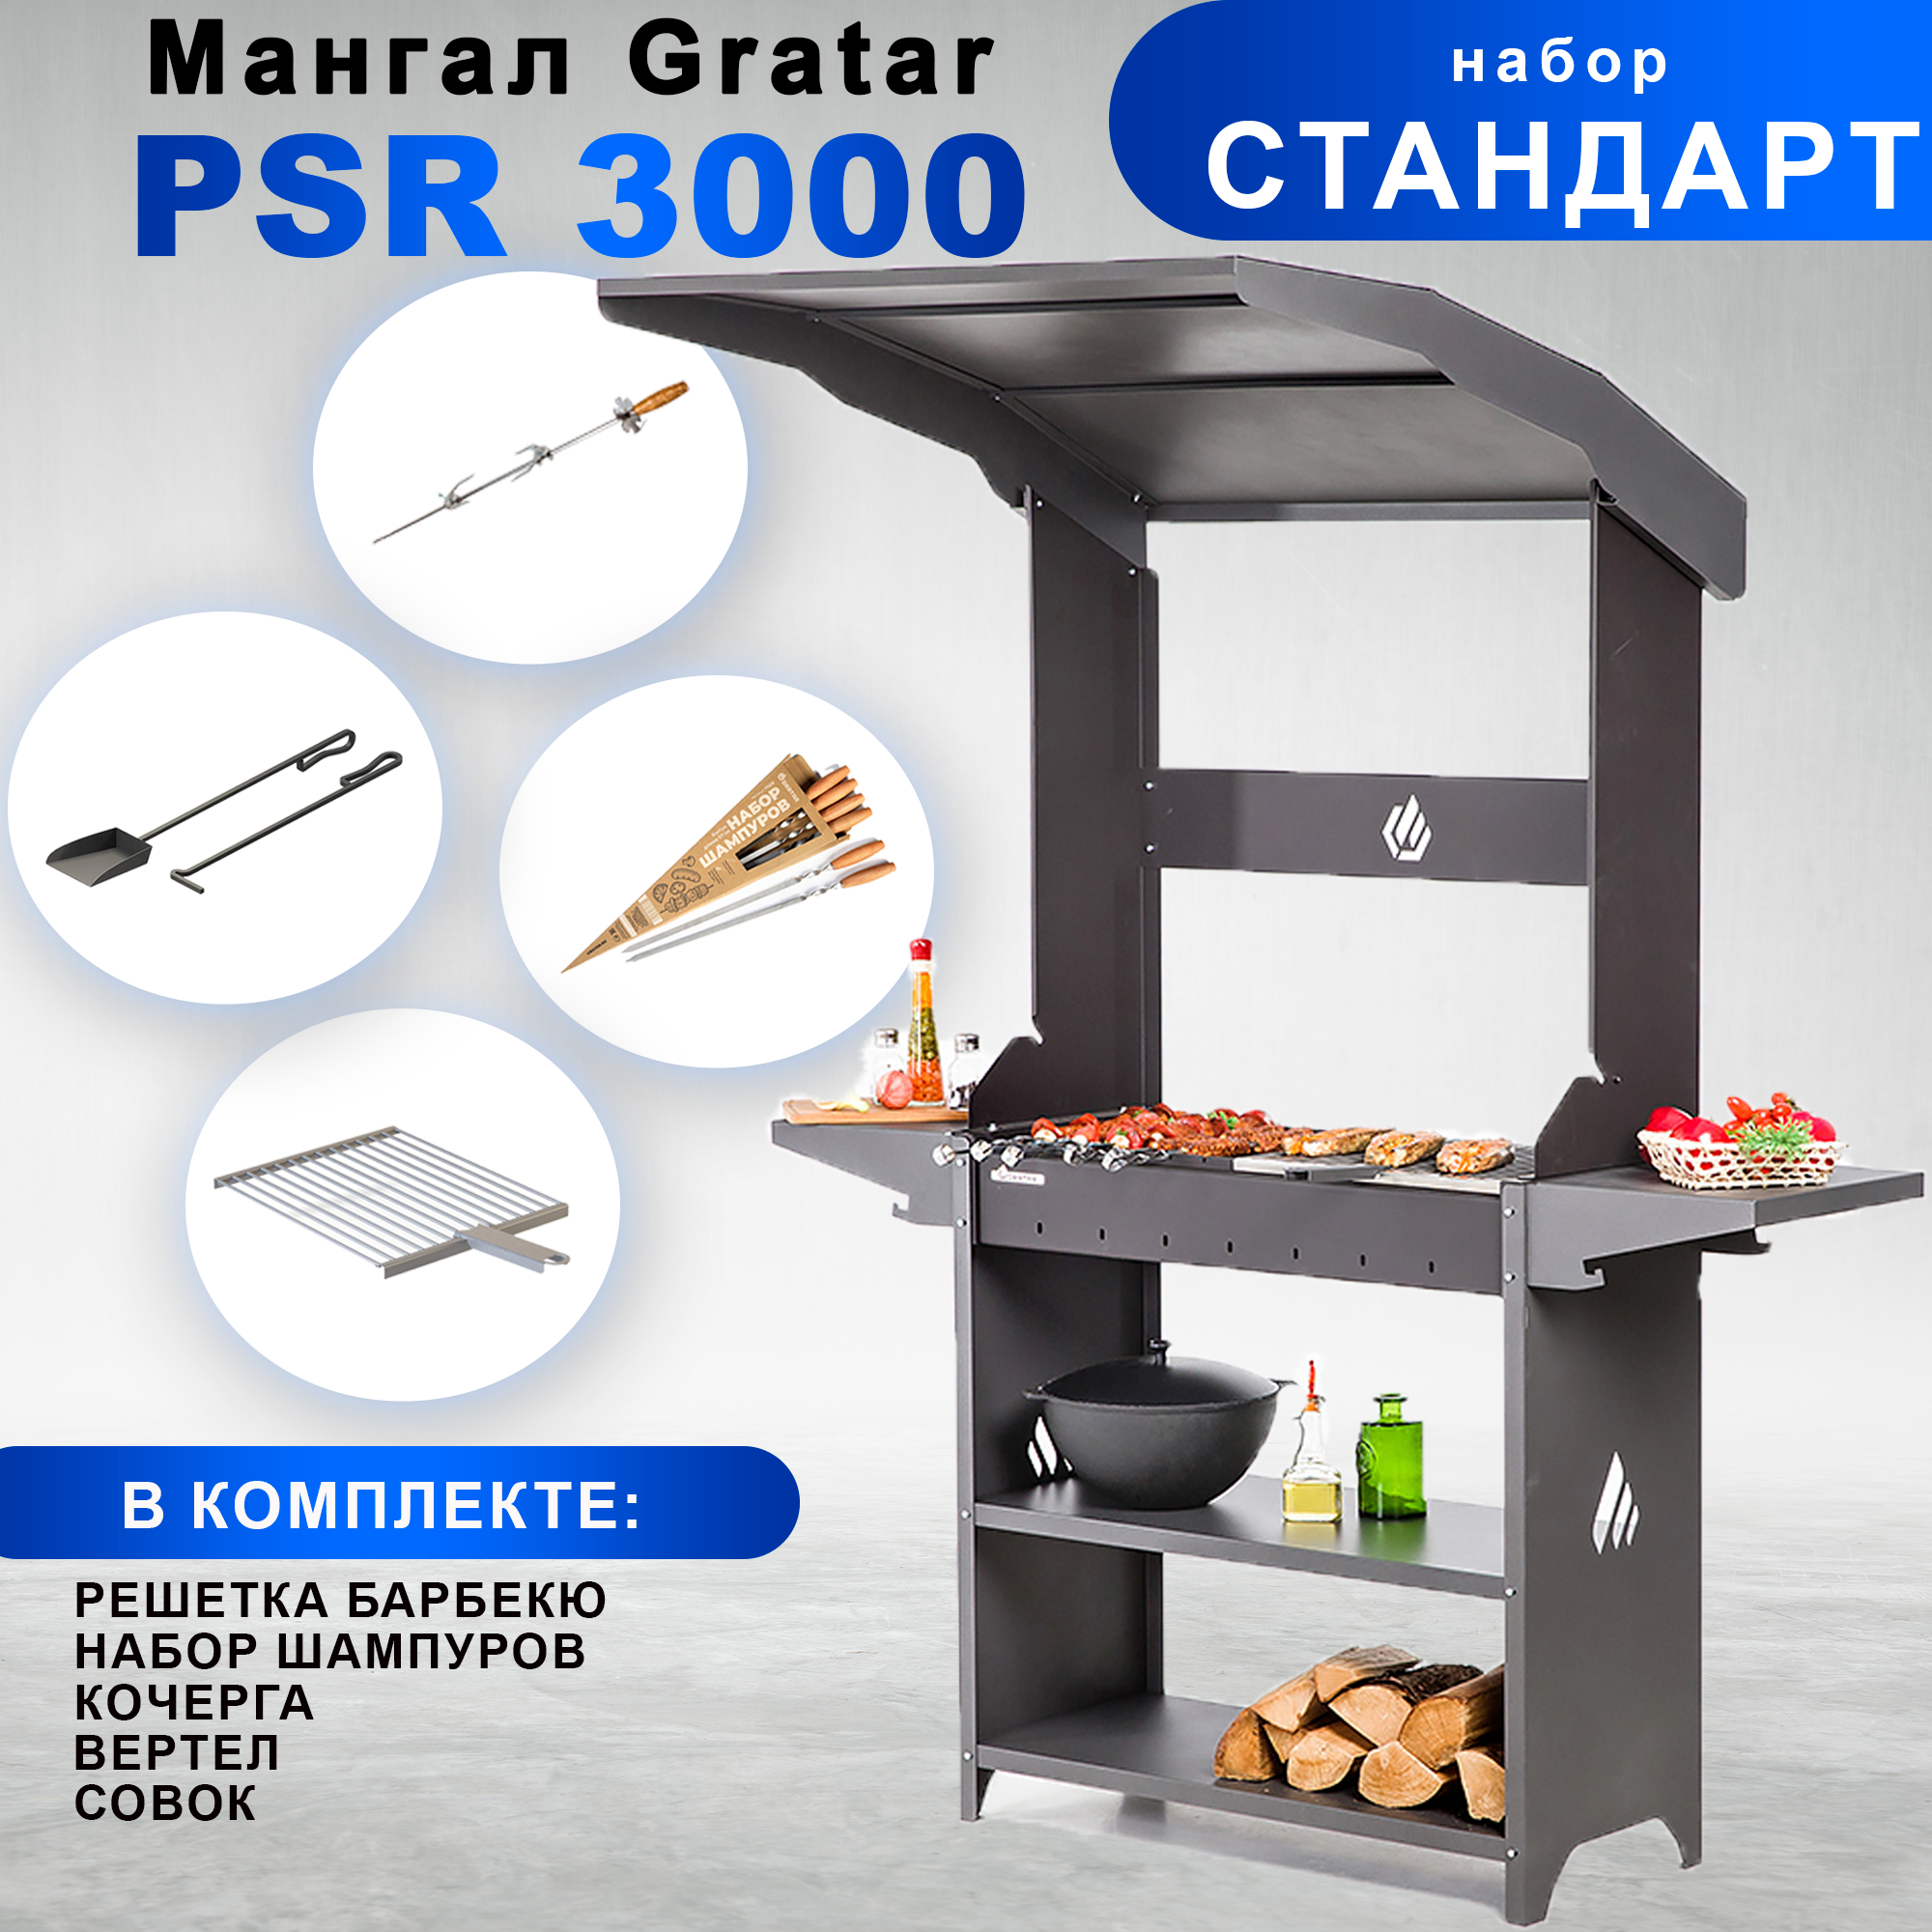 Мангал Gratar Professional Standart Roof PSR 3000 с набором аксессуаров 